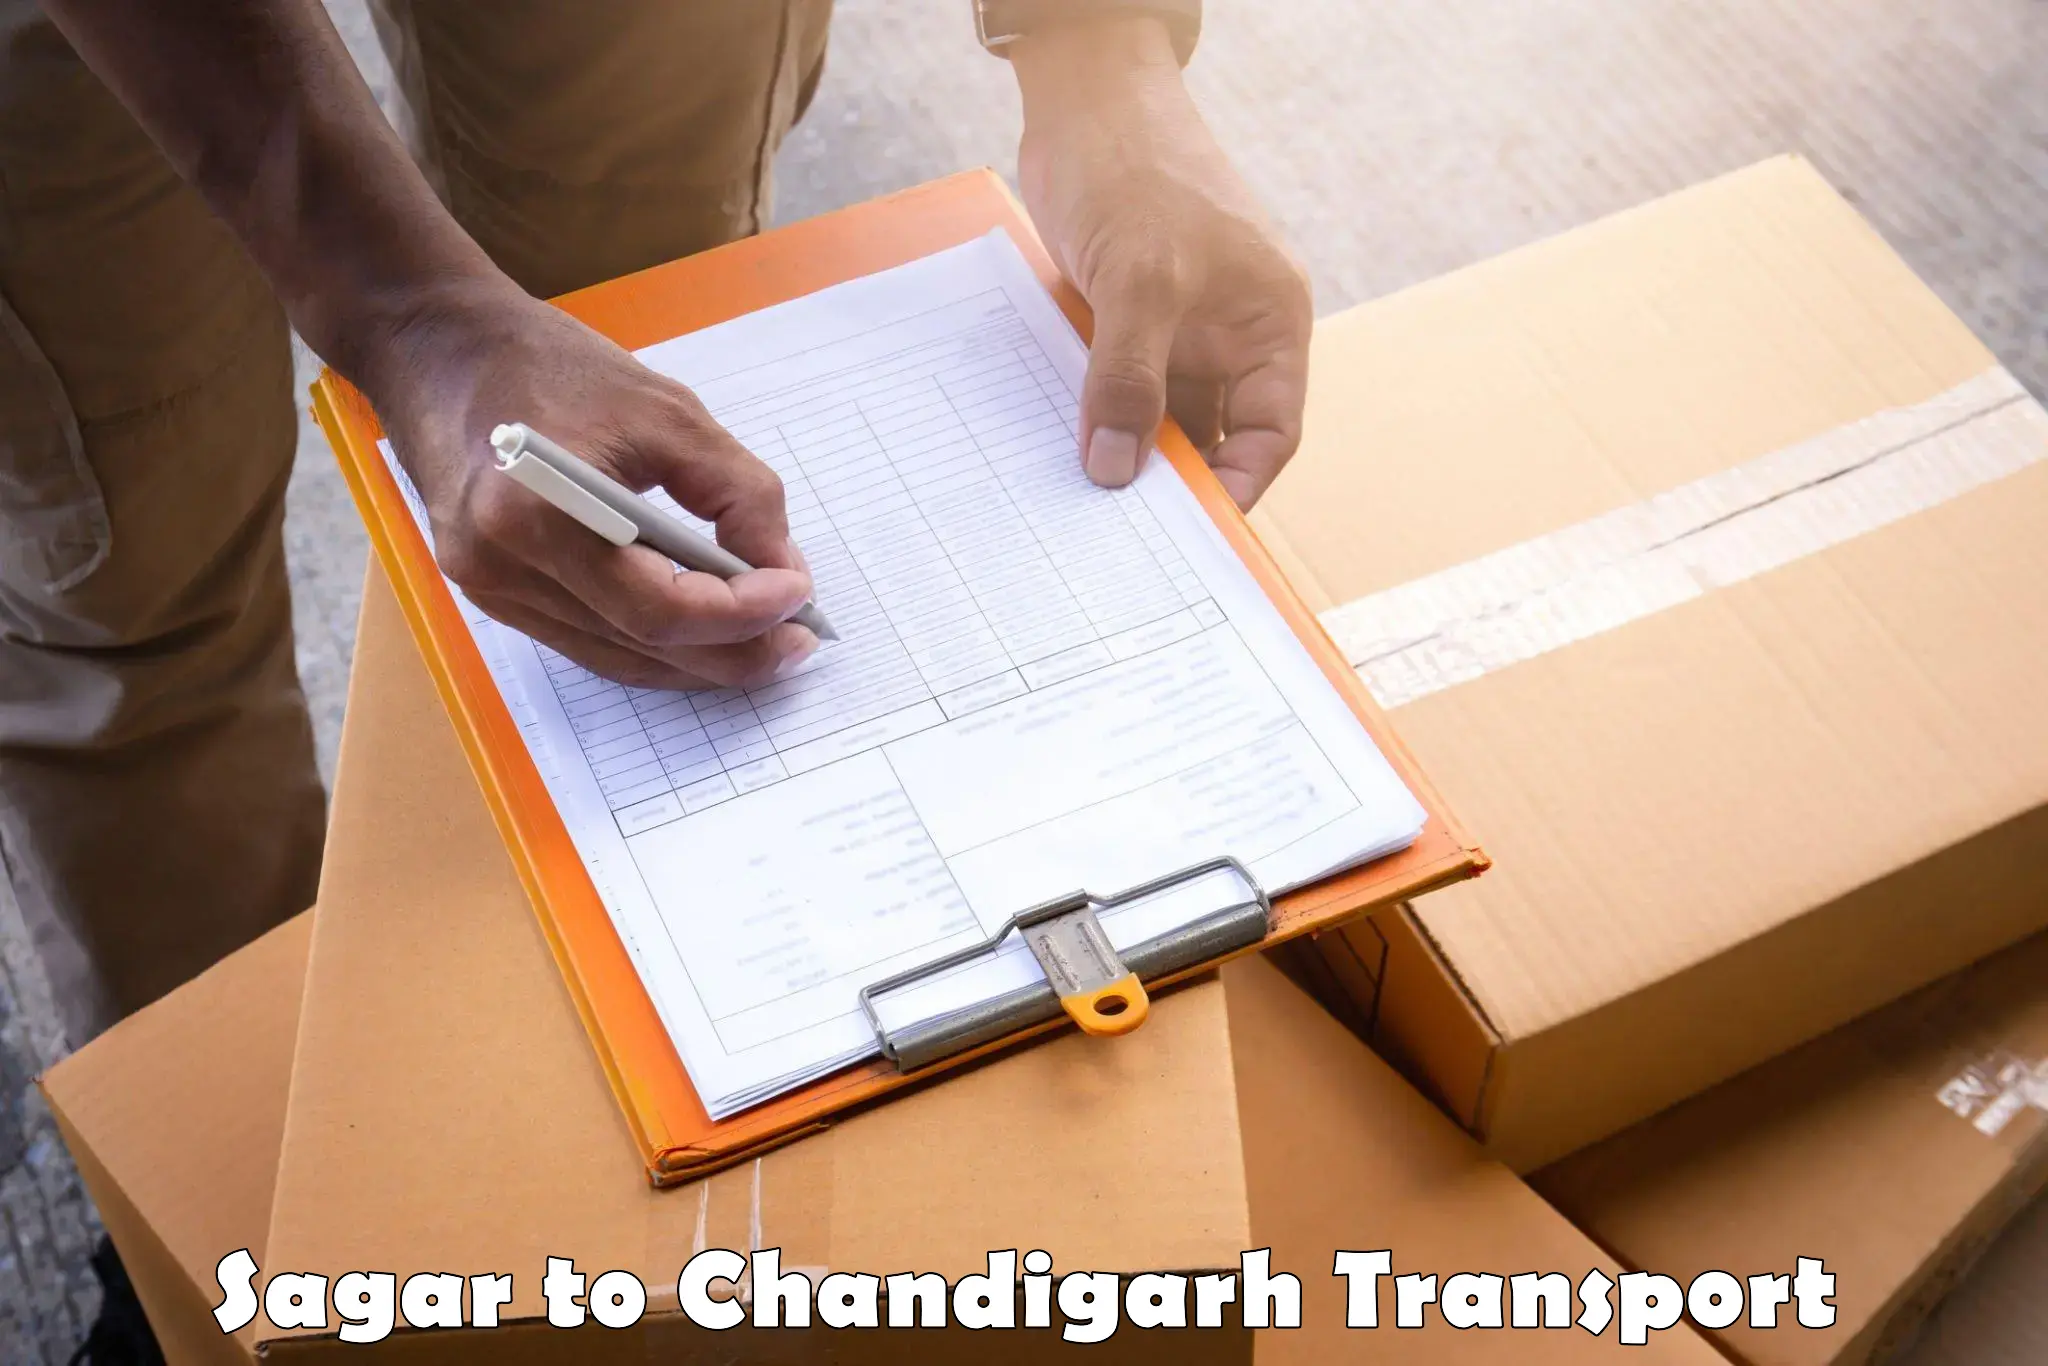 Furniture transport service Sagar to Chandigarh